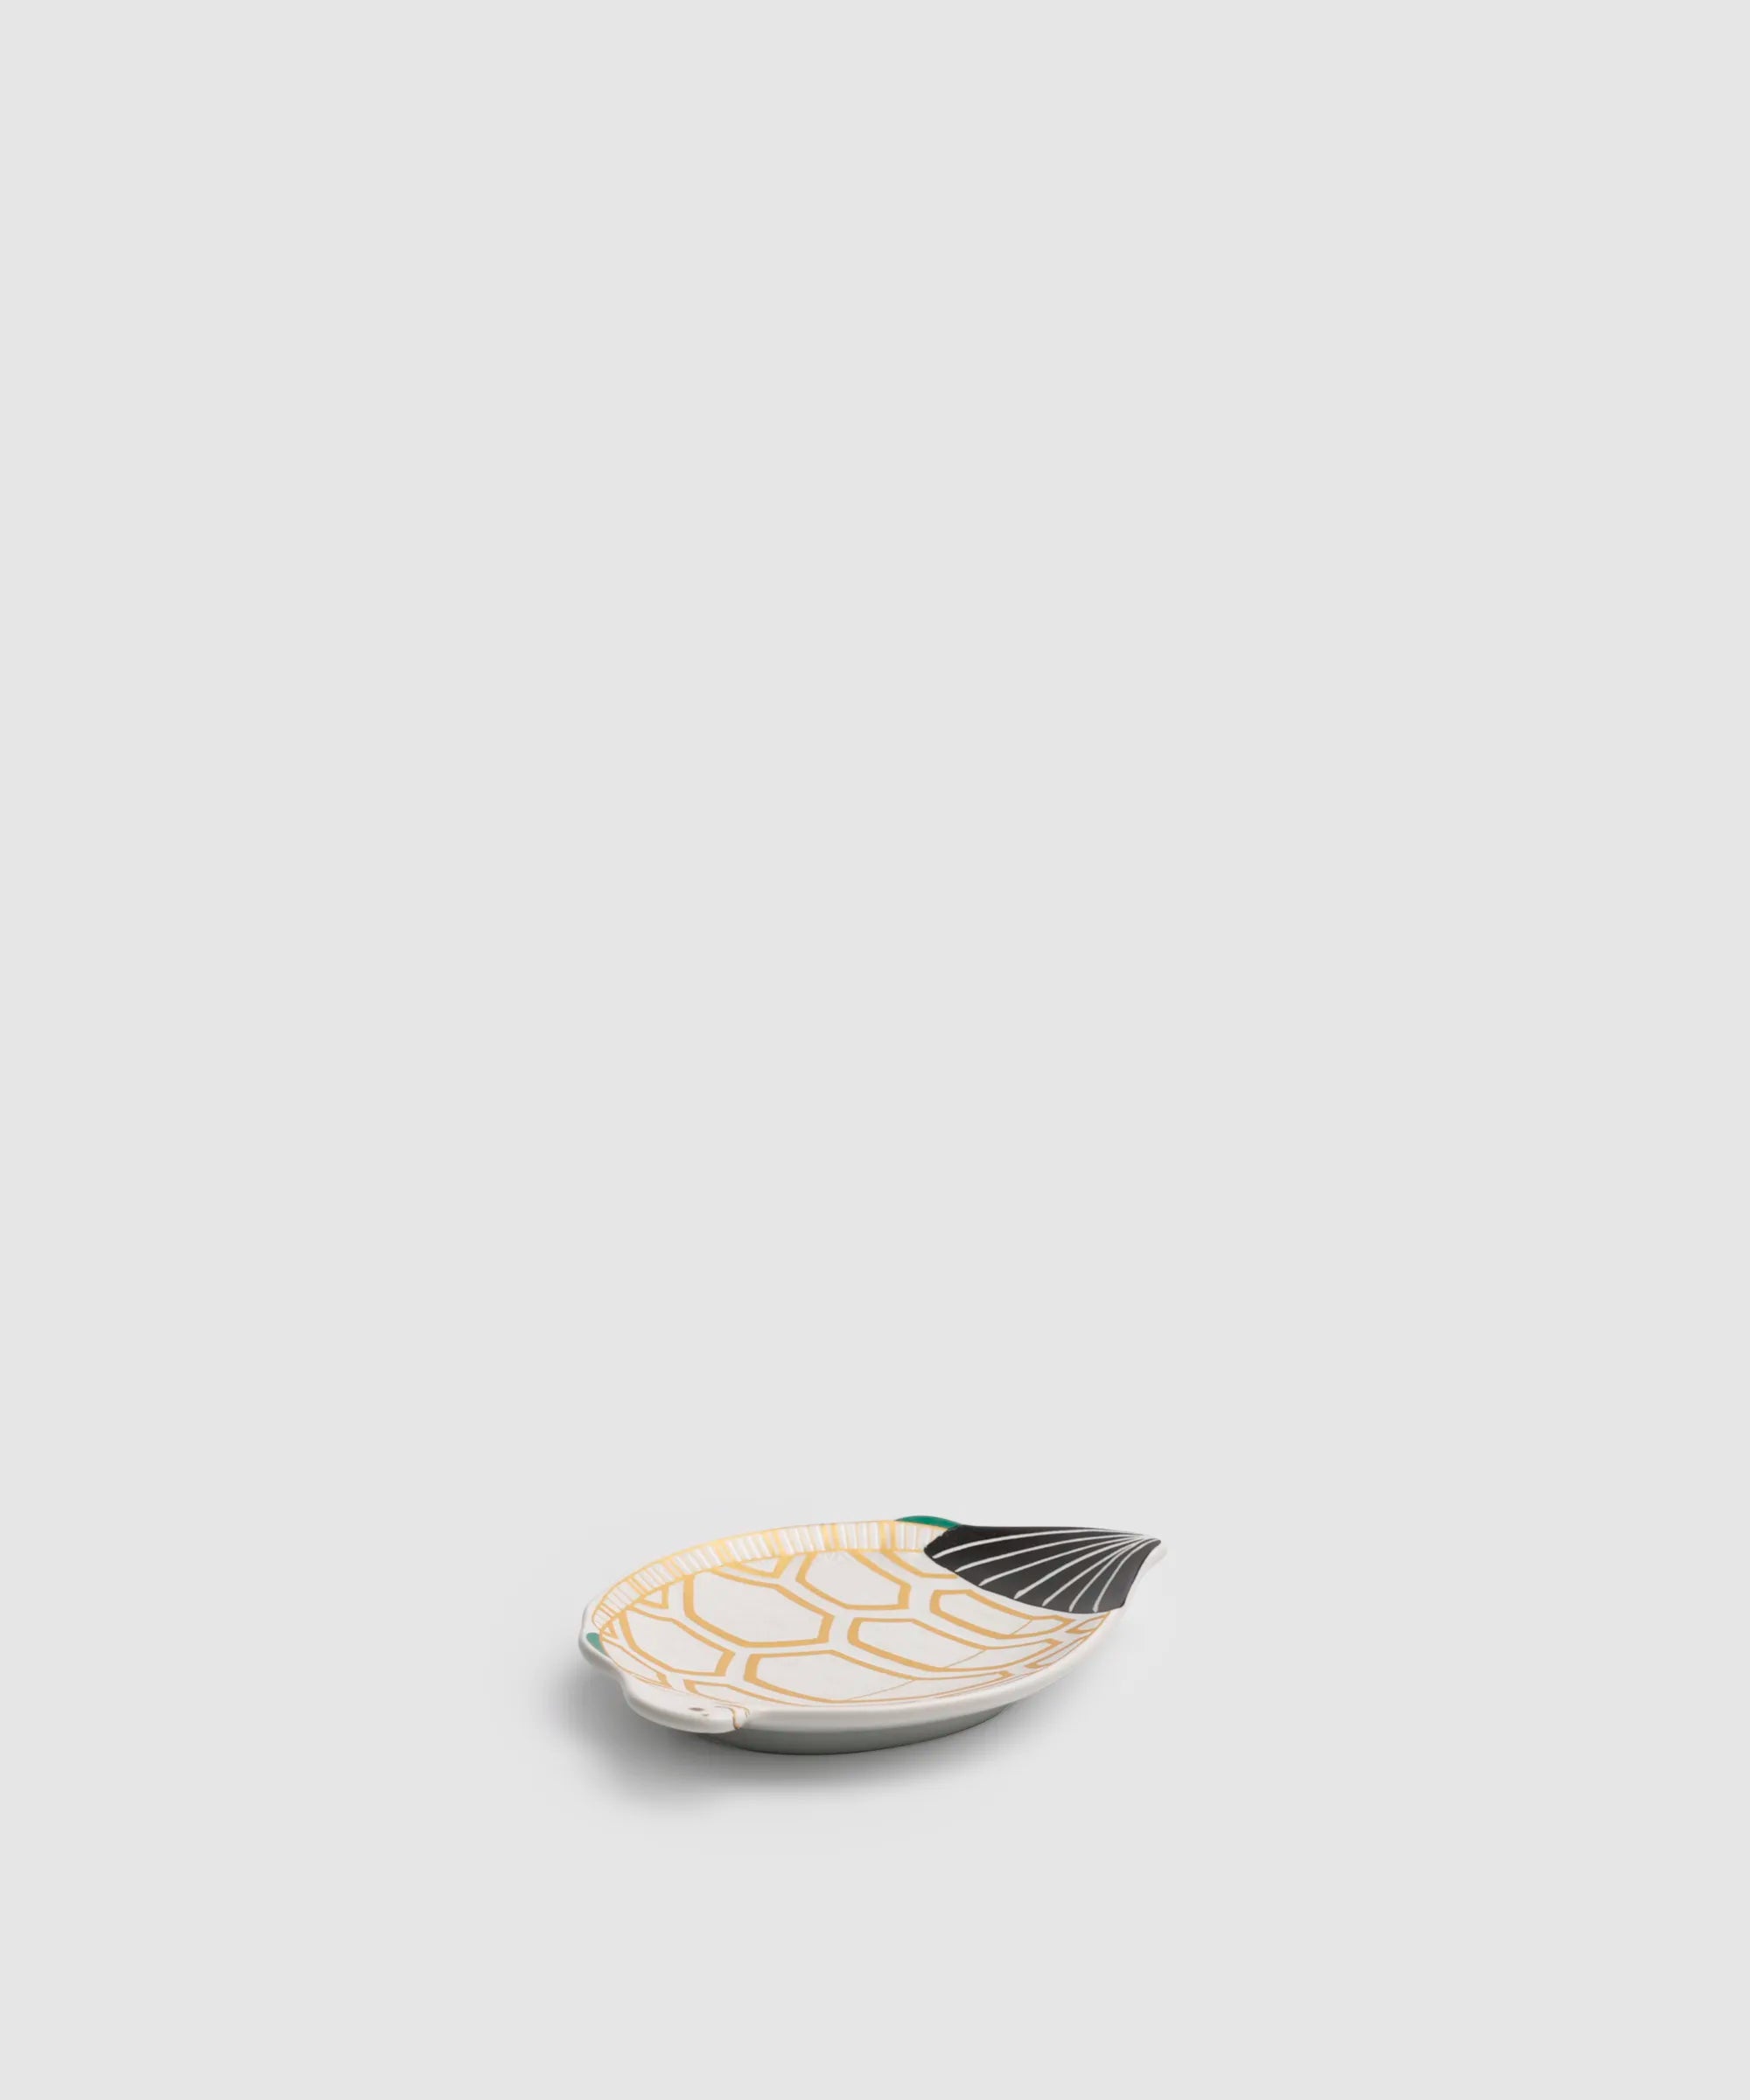 錦雪衣菱紋様 - 亀型小皿